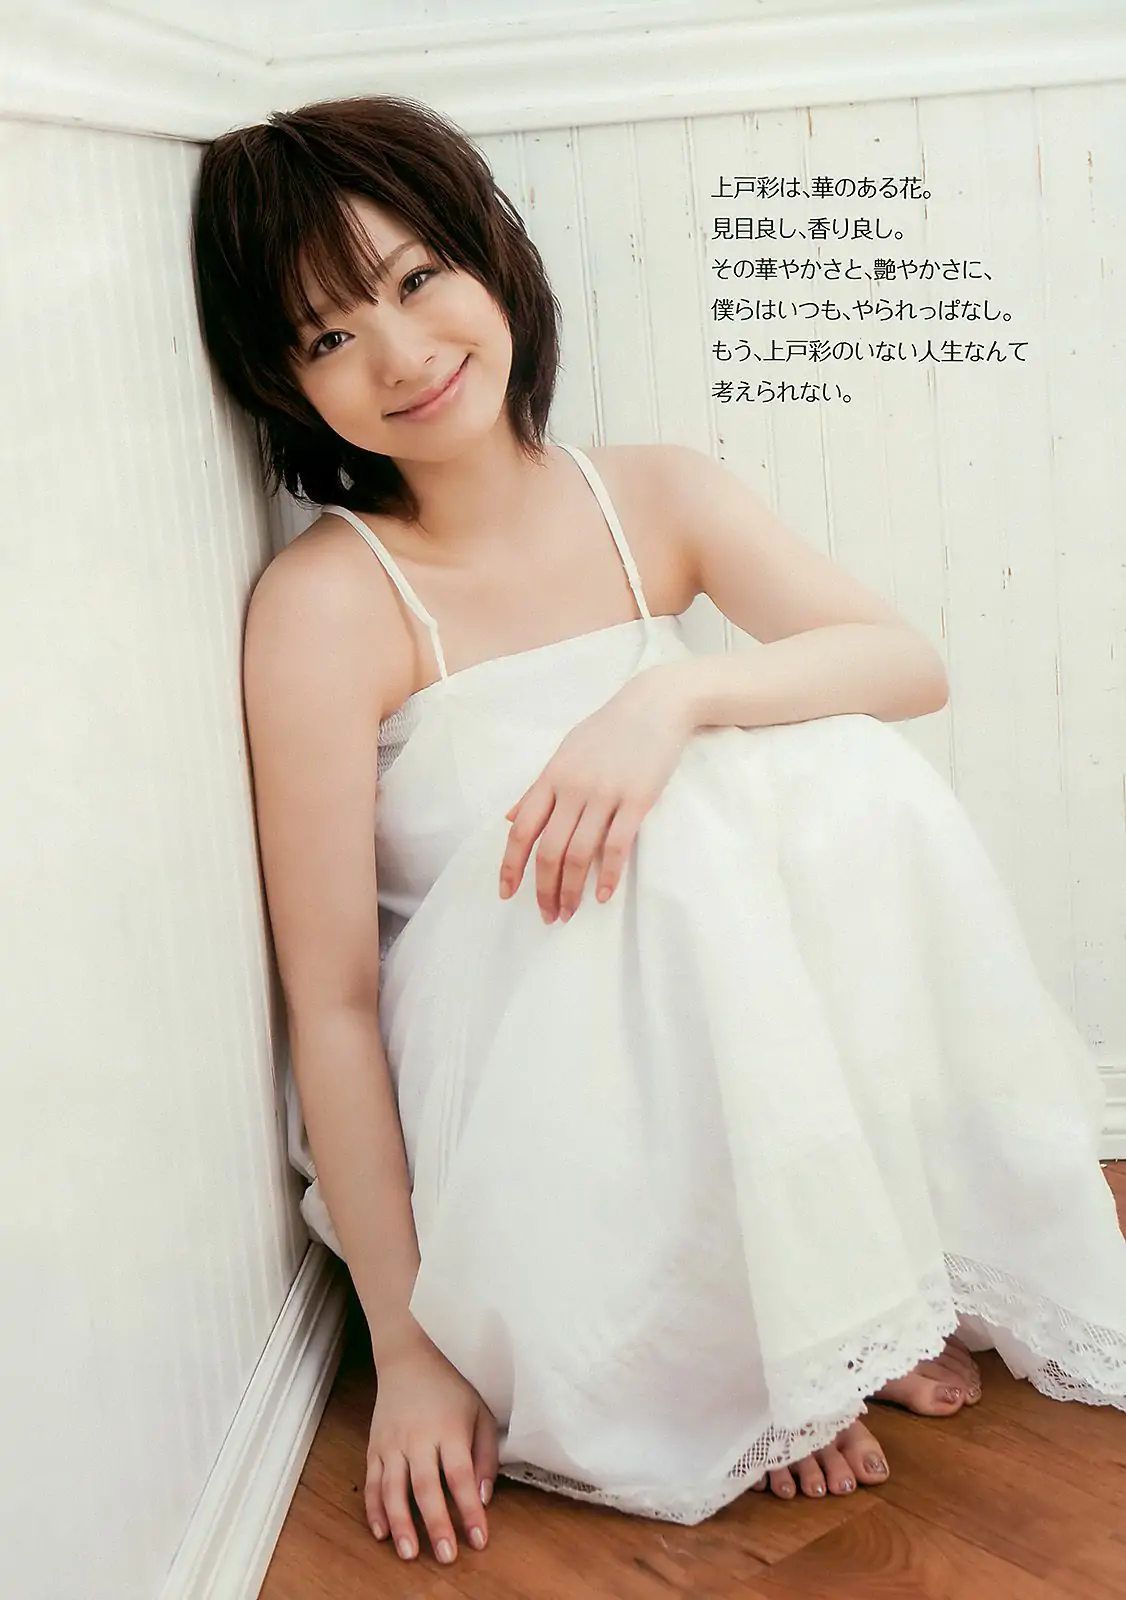 上戸彩 逢沢りな 甲斐まり恵 AKB48 白石美帆 後藤理沙 [Weekly Playboy] 2010年No.19-20 写真杂志